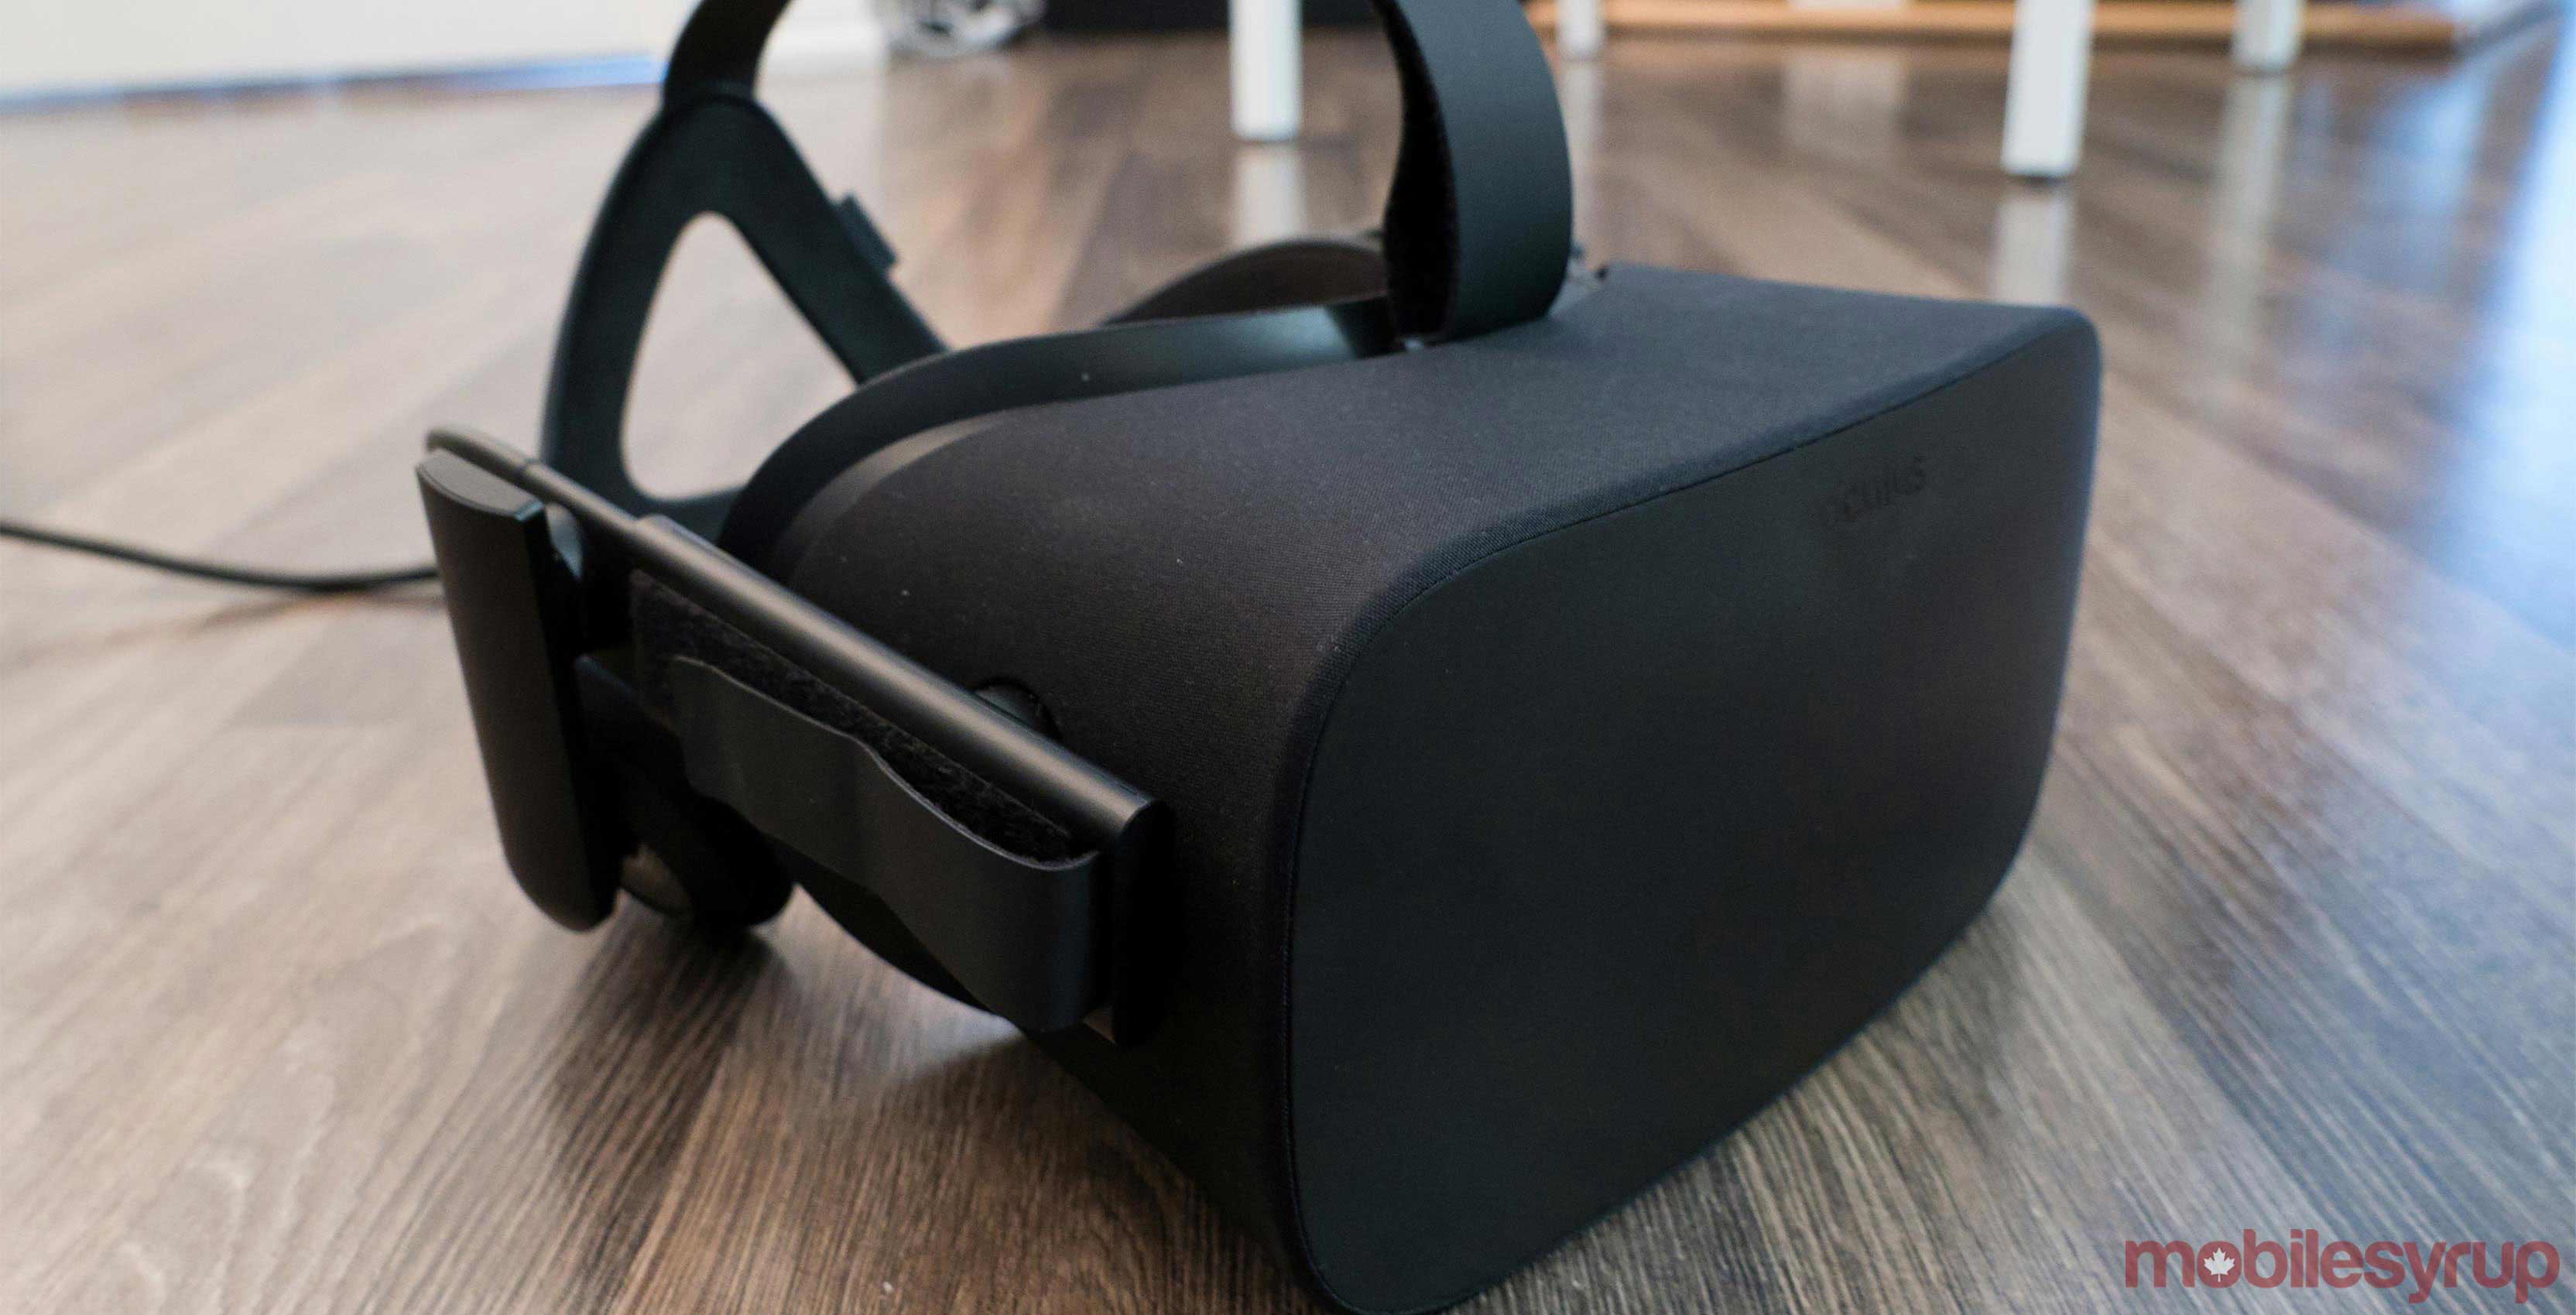 Oculus Rift Vr headset